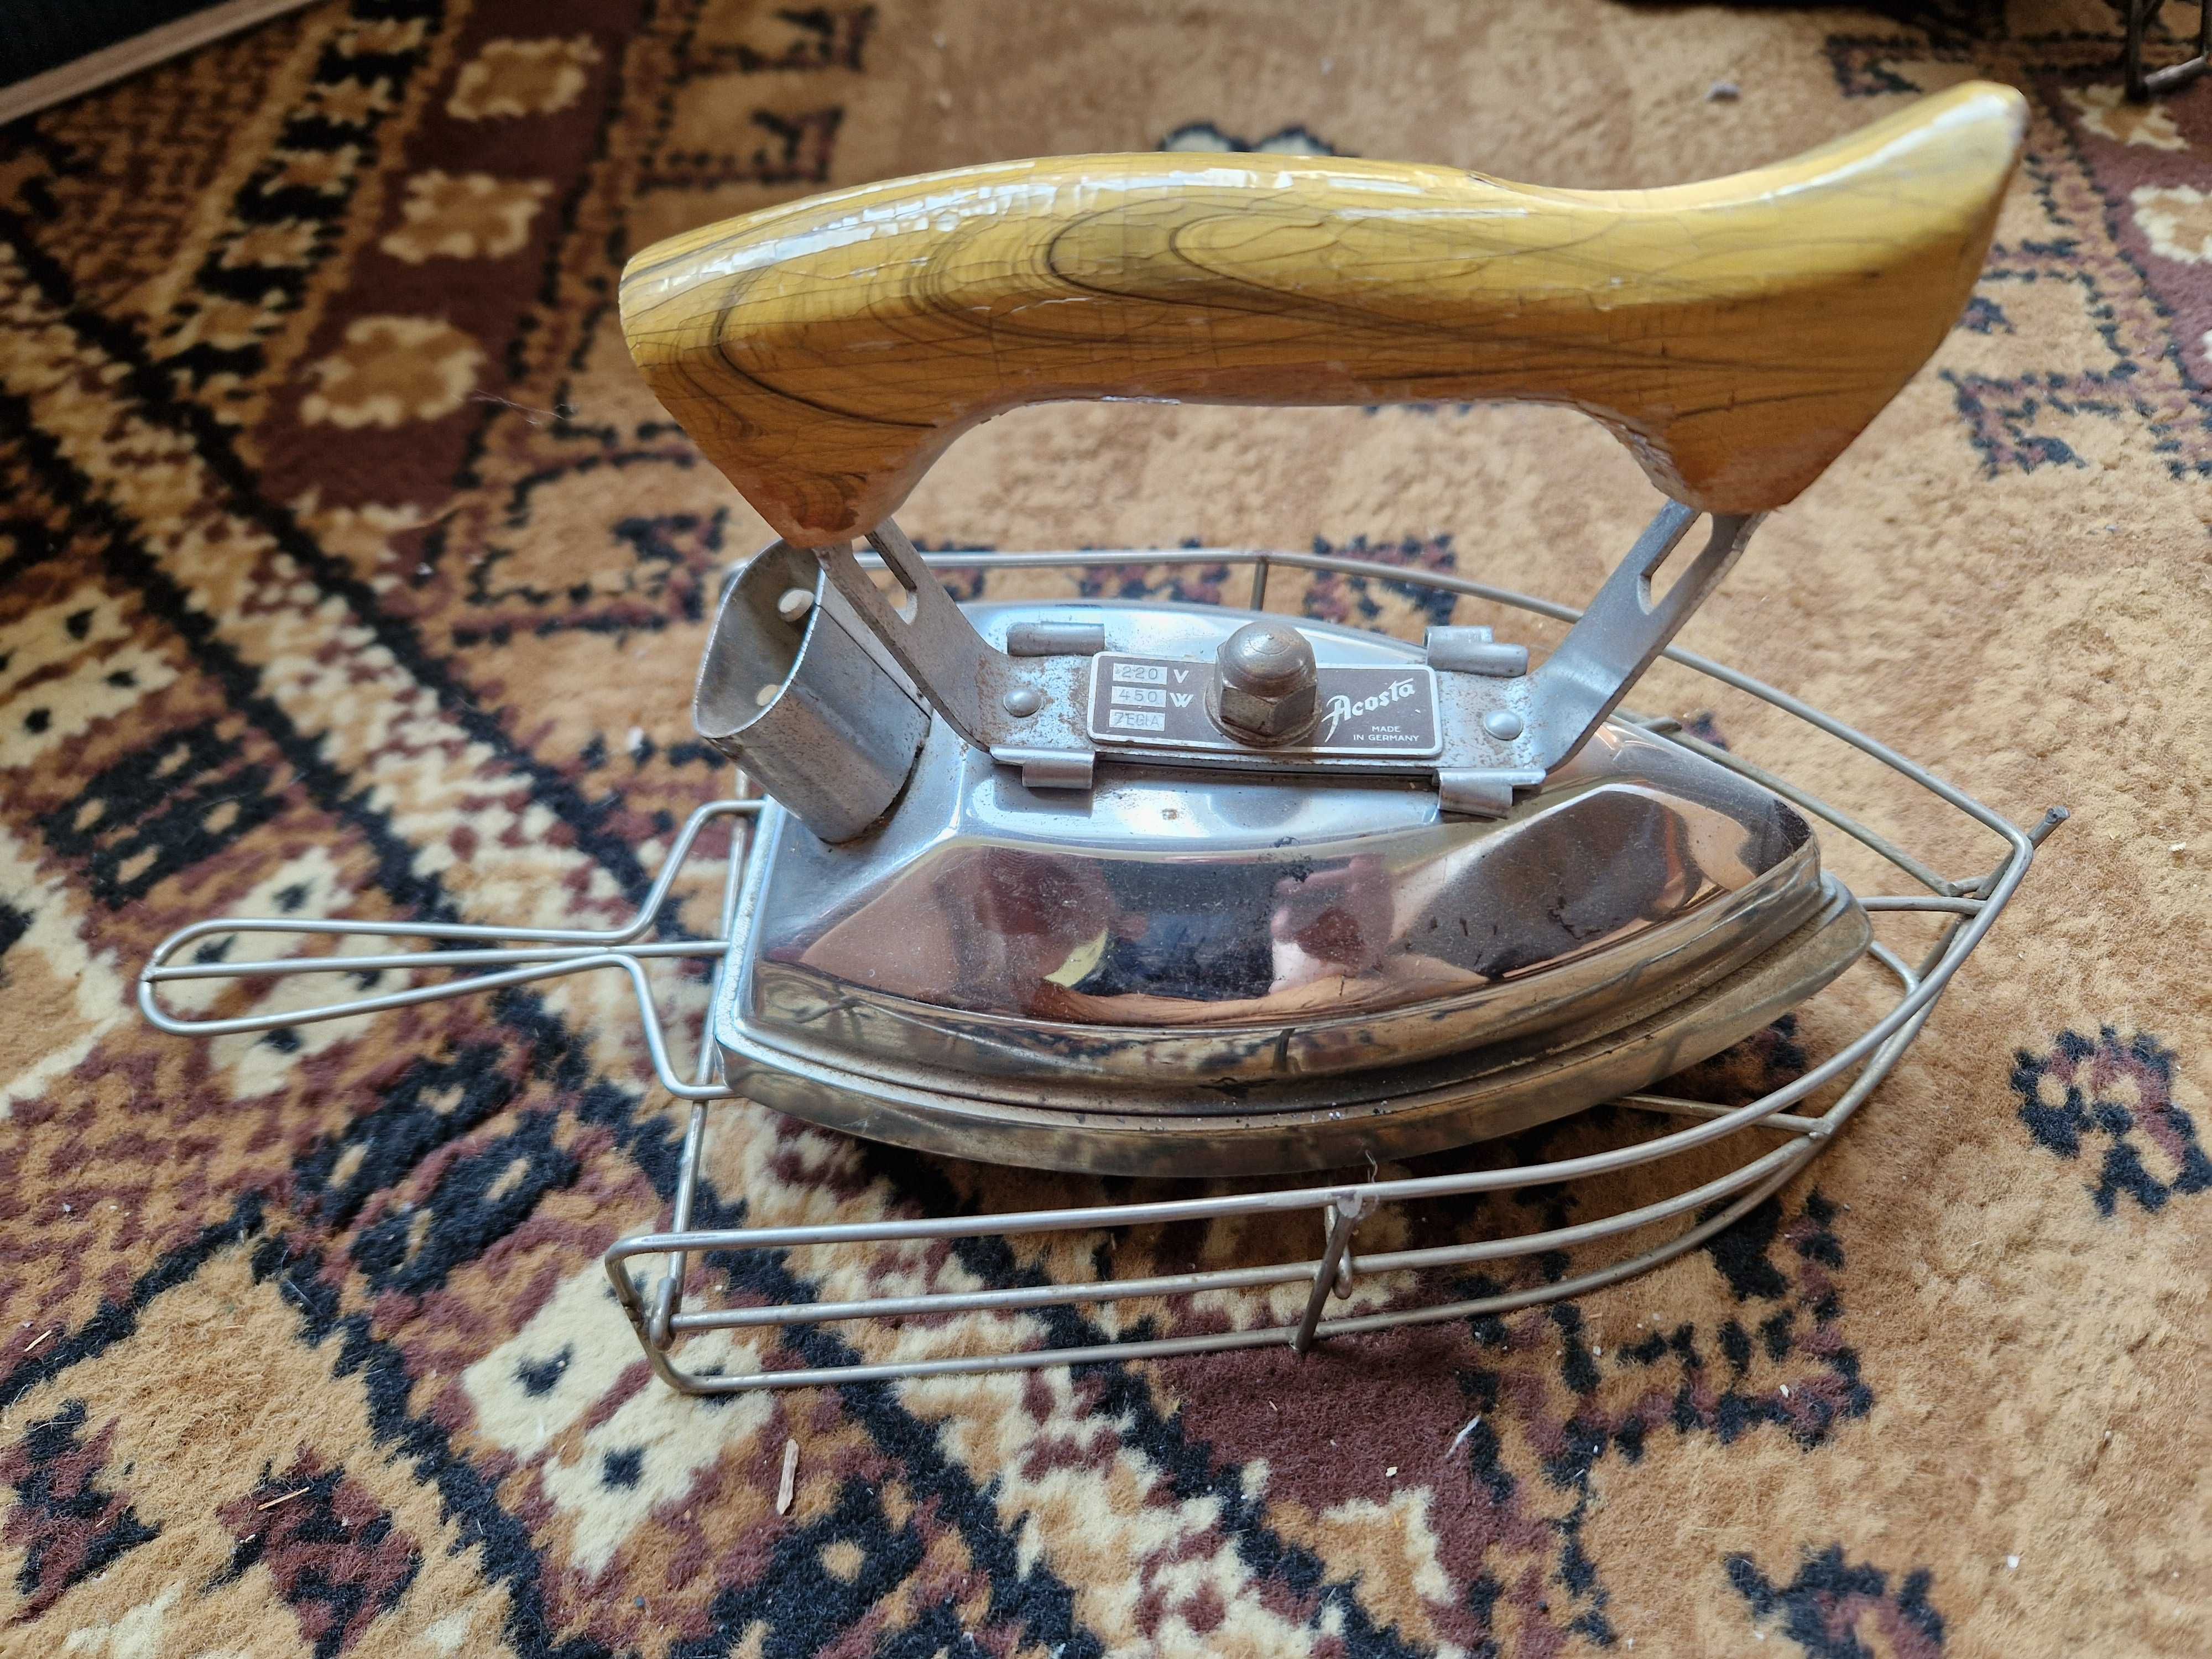 Vintage rar electric fier de călcat fabricat în Germania